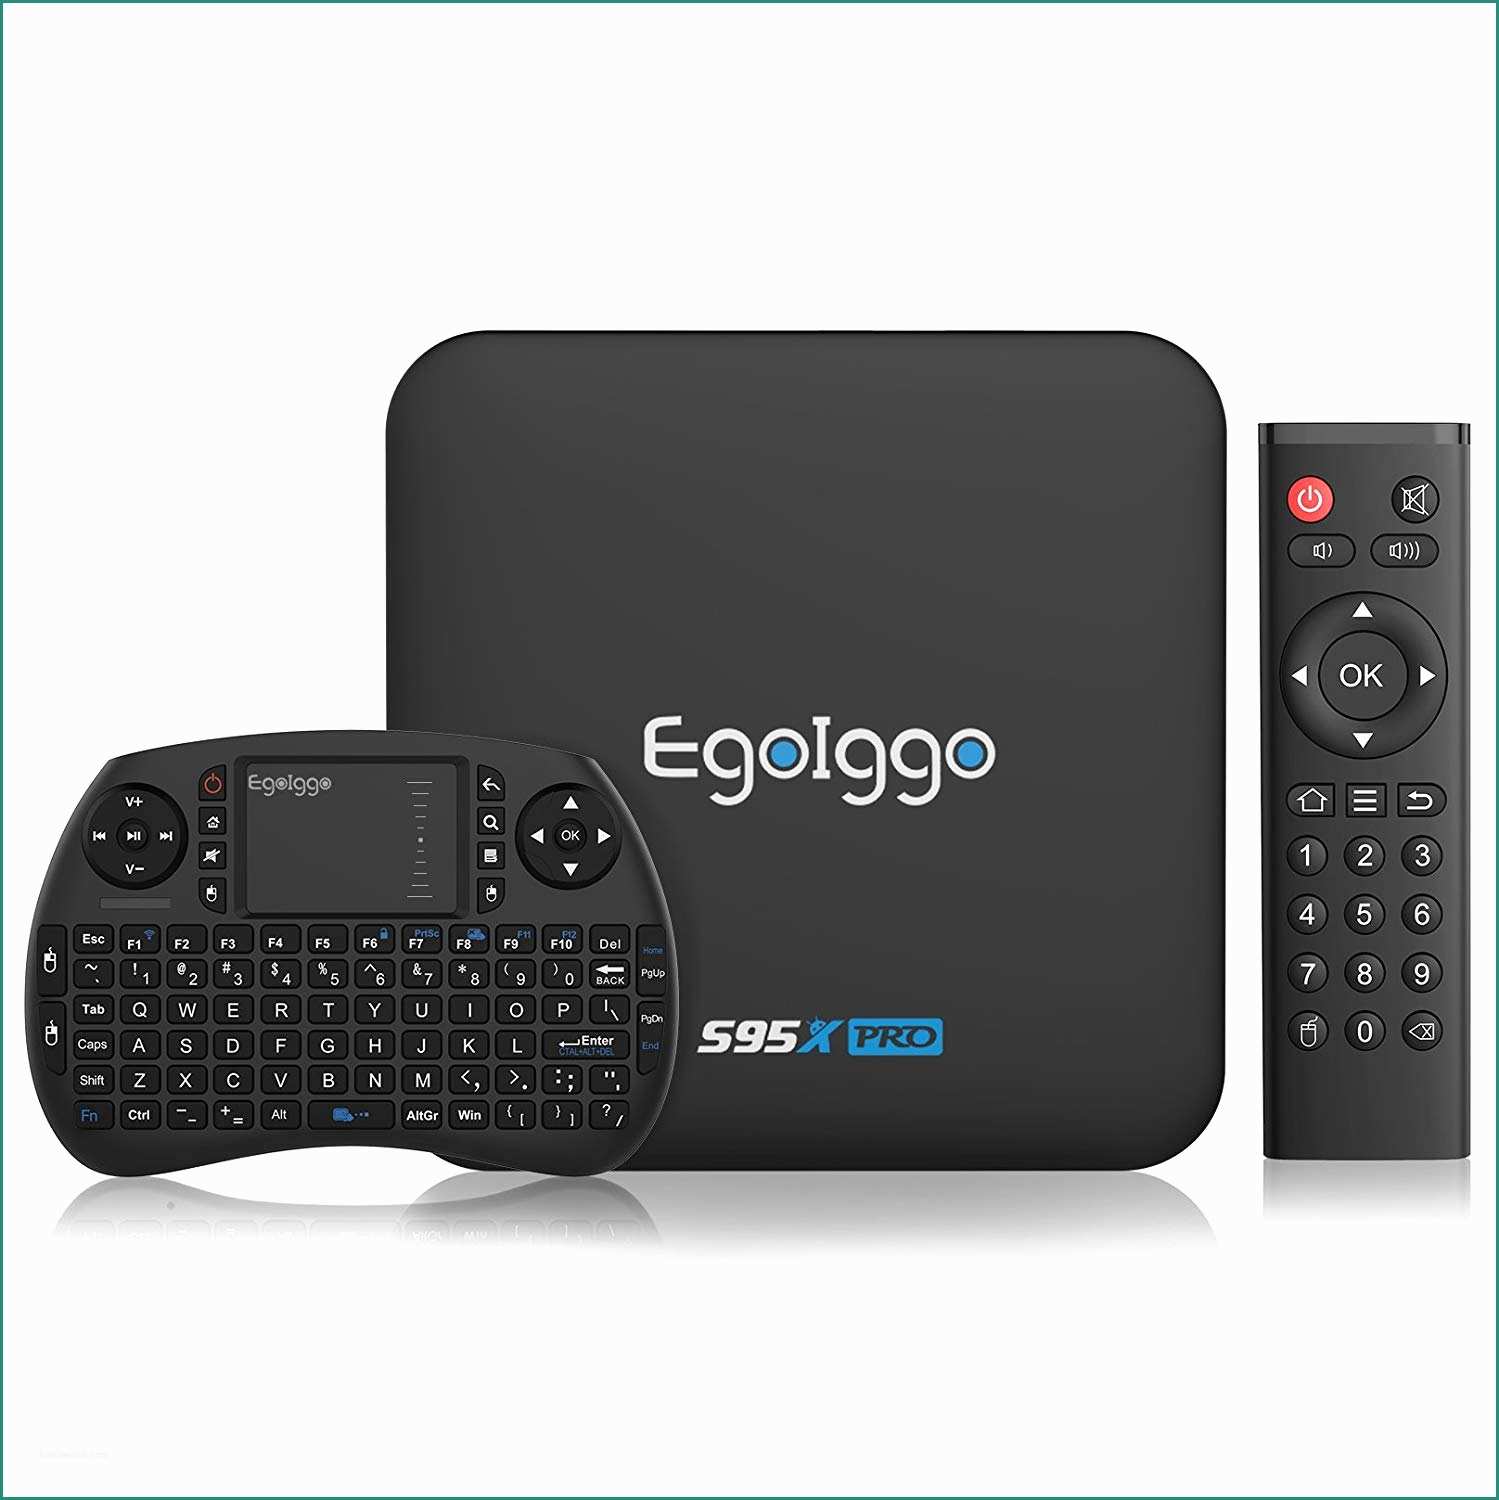 Timvision Vs Netflix E 2gb 16gb S905x] Tv Box Con Mini Tastiera Wireless Egoiggo S95x Pro